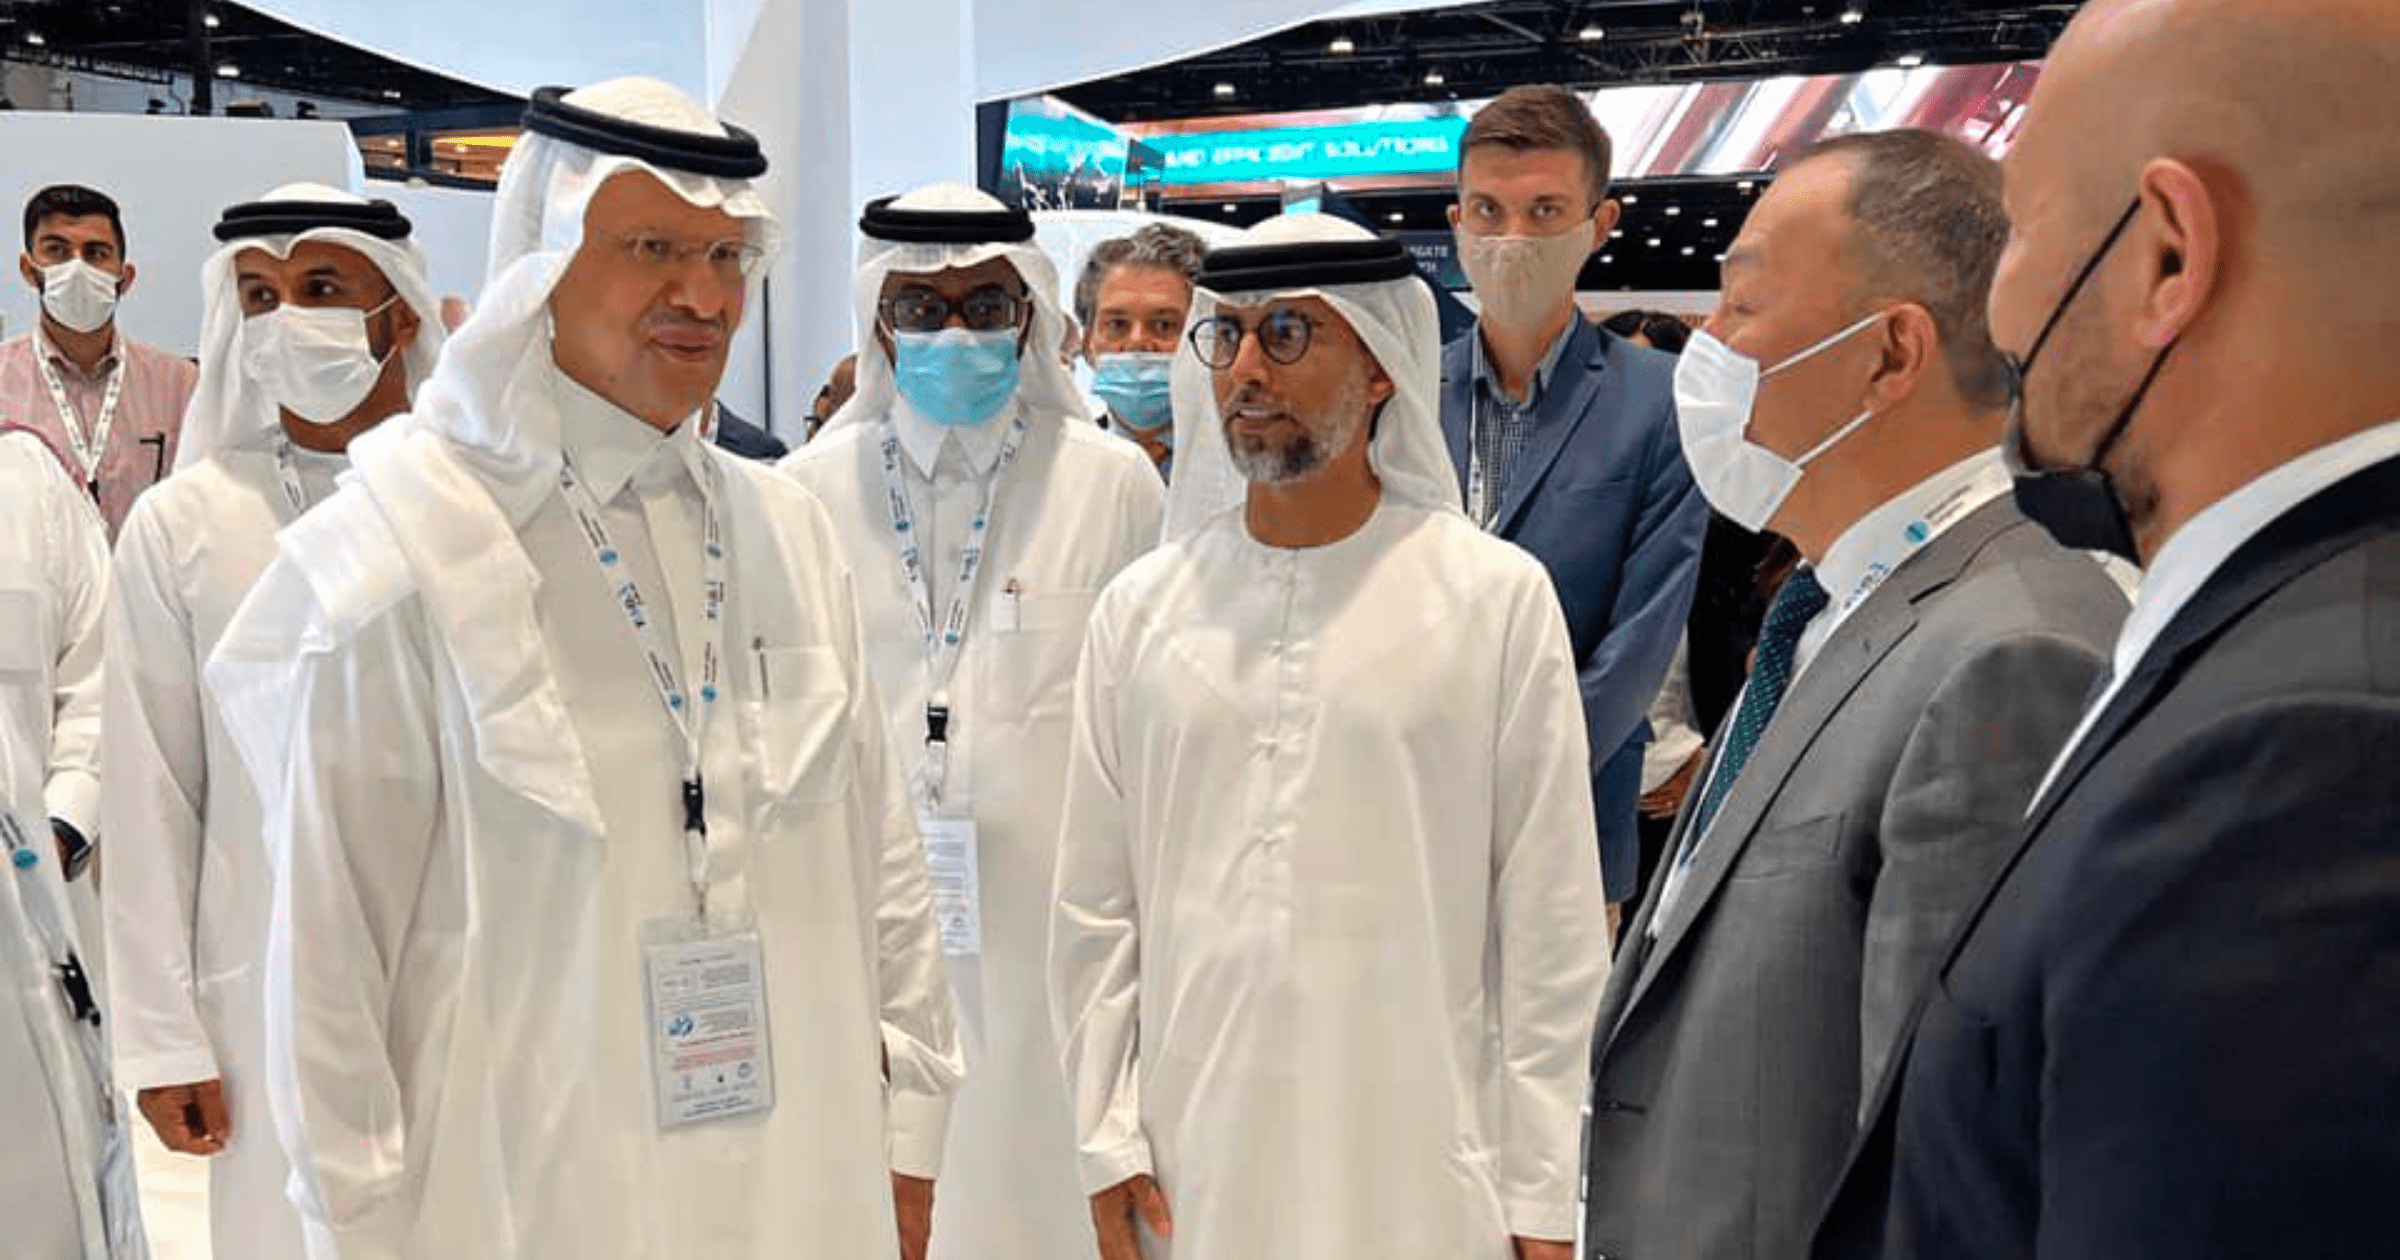 КР укрепляет сотрудничество в энергетике с Саудовской Аравией и ОАЭ — министры трех стран провели переговоры